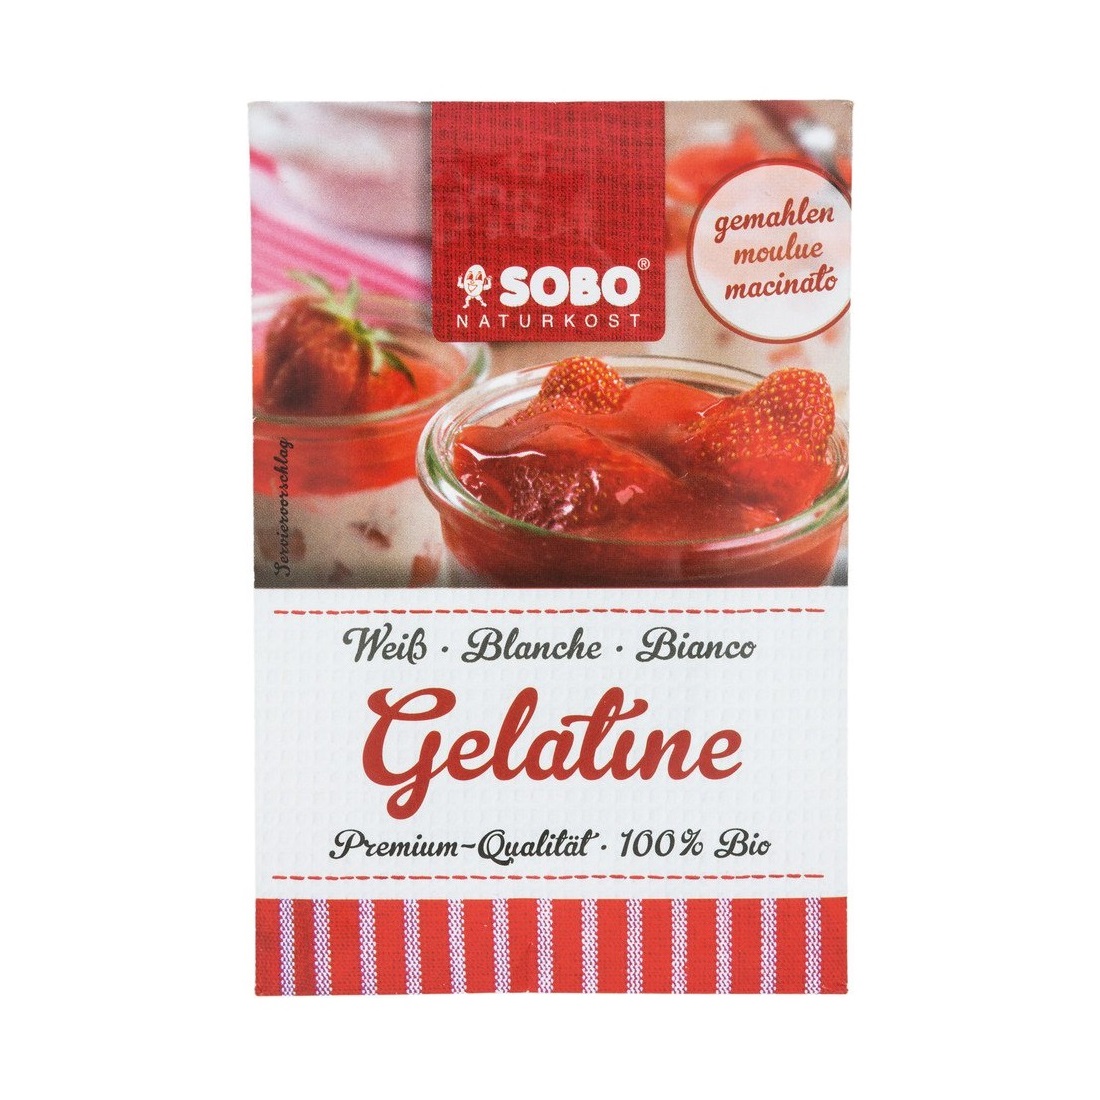 Gelatine hữu cơ dạng lá Sobo 10g (6 lá)